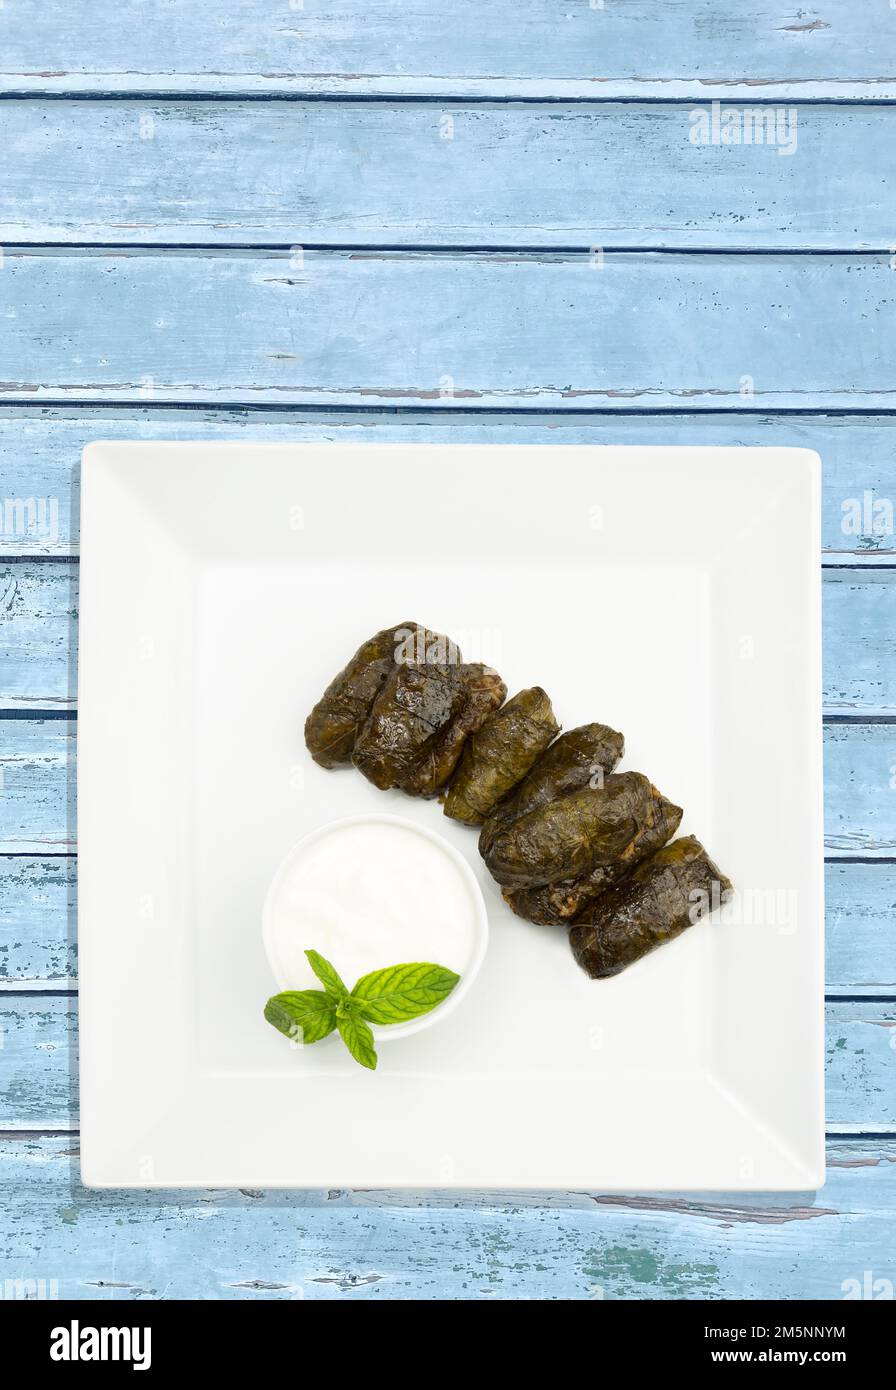 Liban cuisine grecque turque, région méditerranéenne. Avec sauce au yaourt vue de dessus Nom local ; yaprek sarma ou dolmadika , dolma , dolmades Banque D'Images